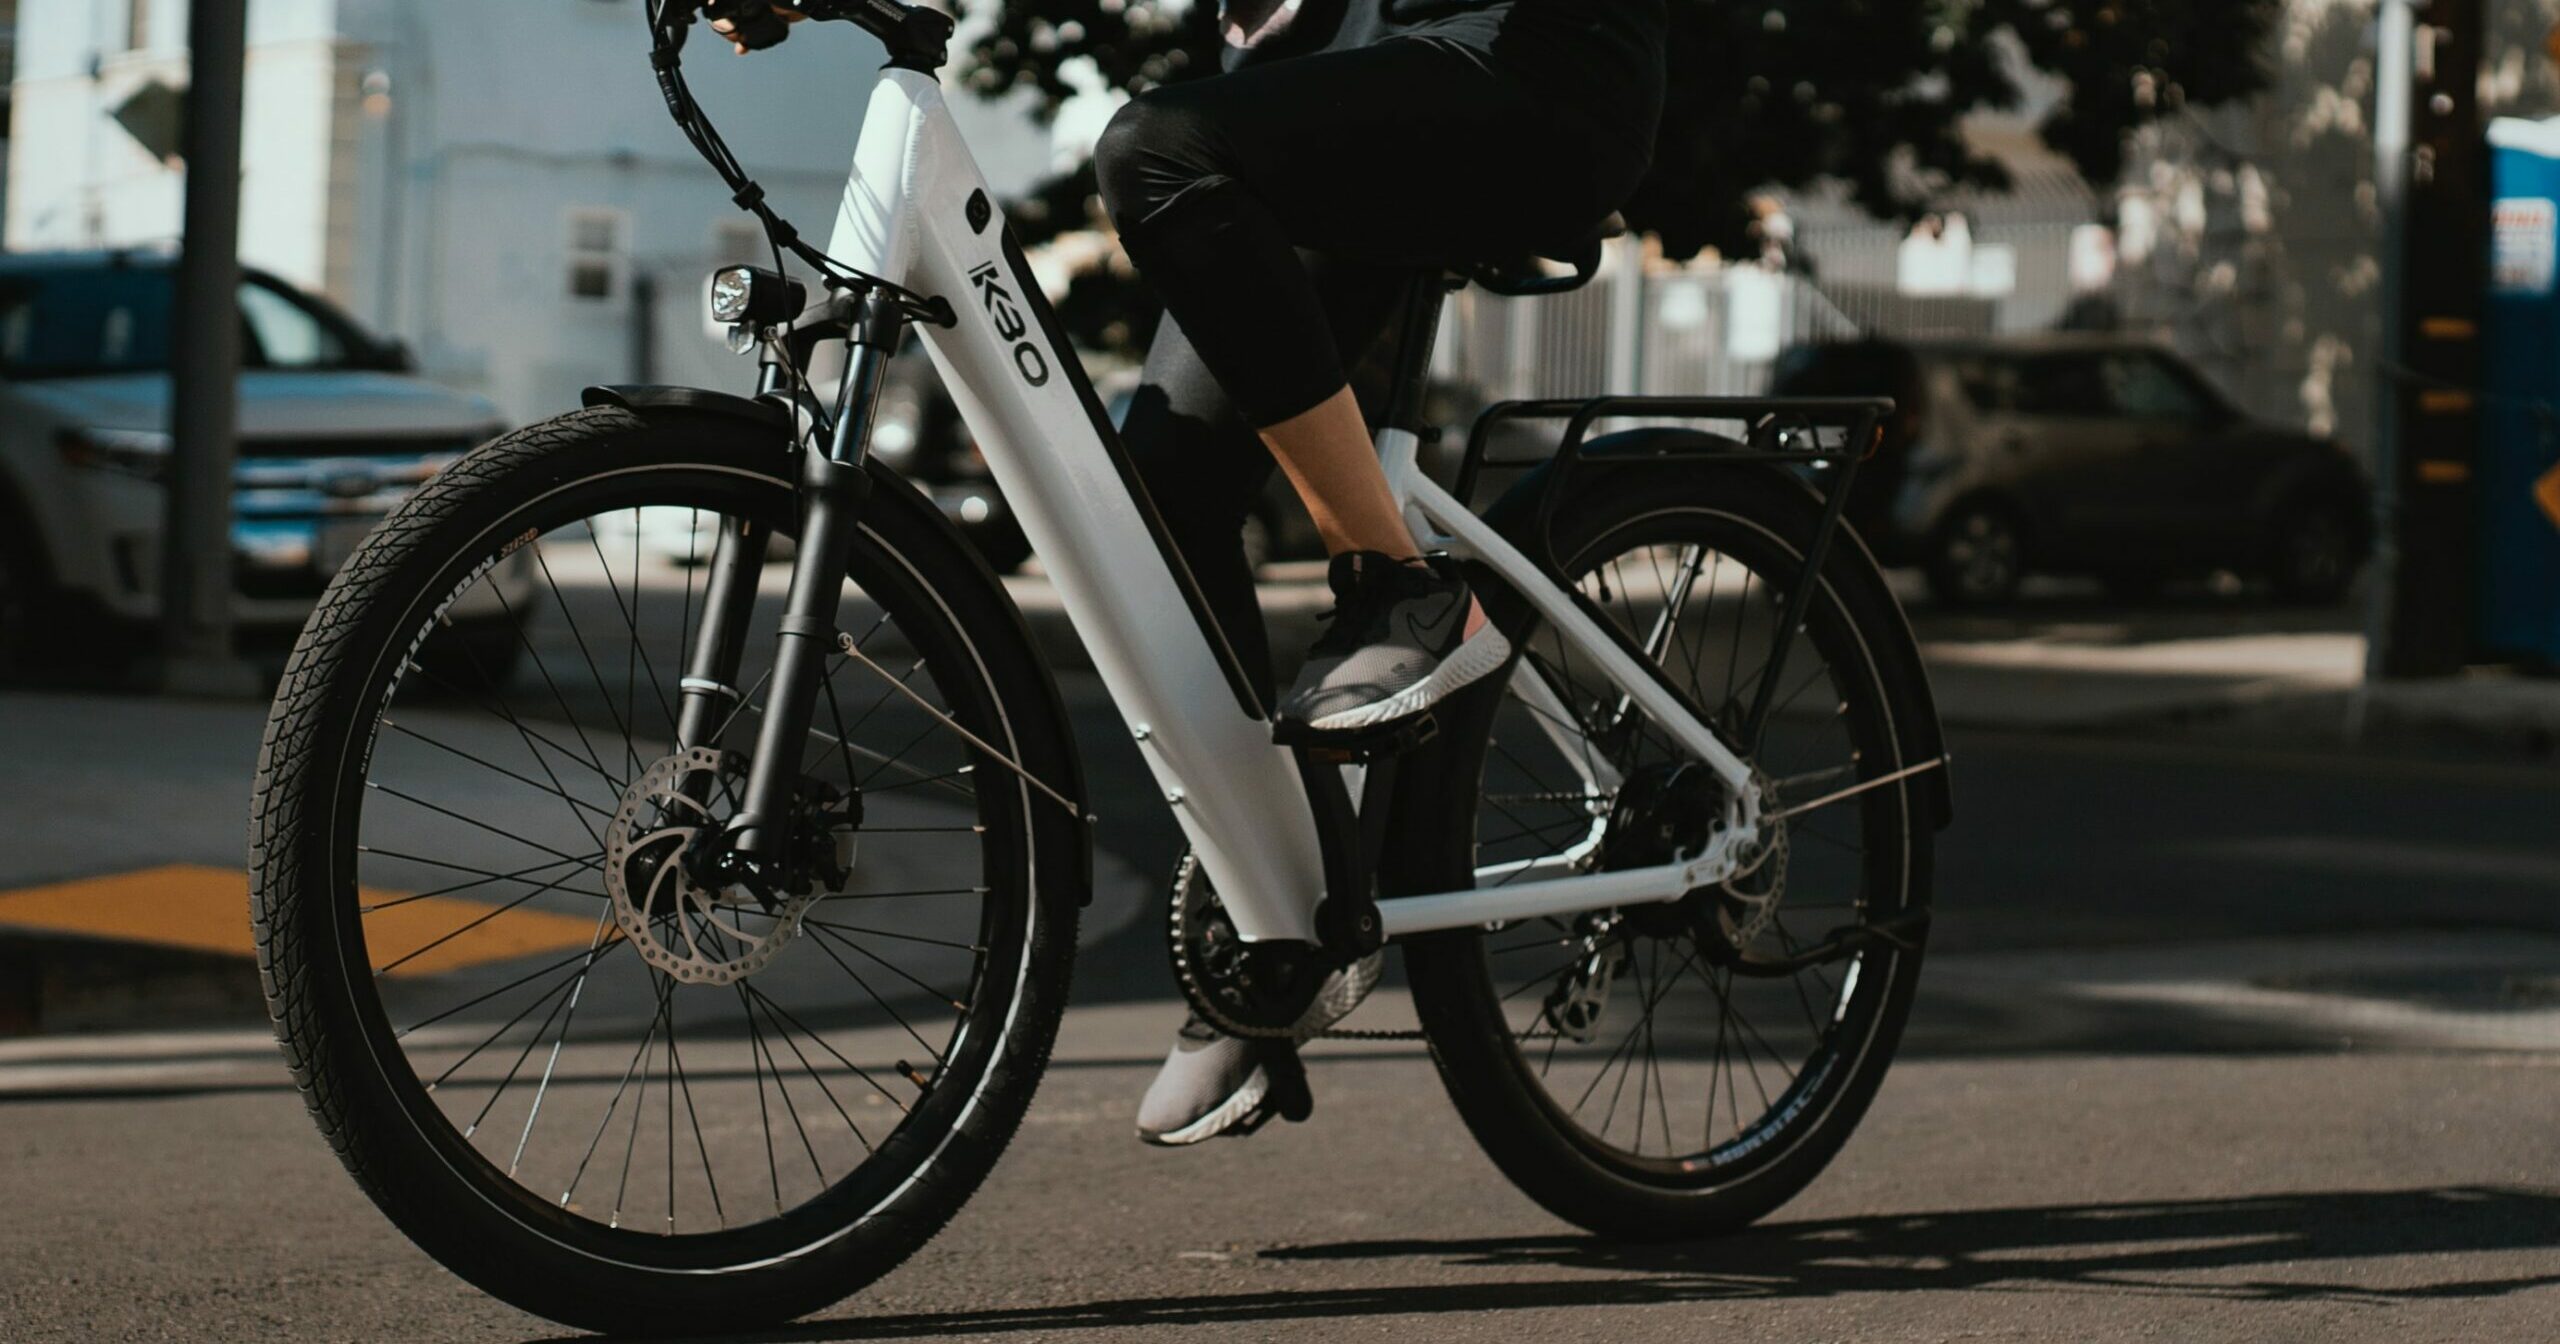 Lire la suite à propos de l’article Le vélo électrique, la nouvelle tendance en ville (et pas que) qui explose tous les chiffres